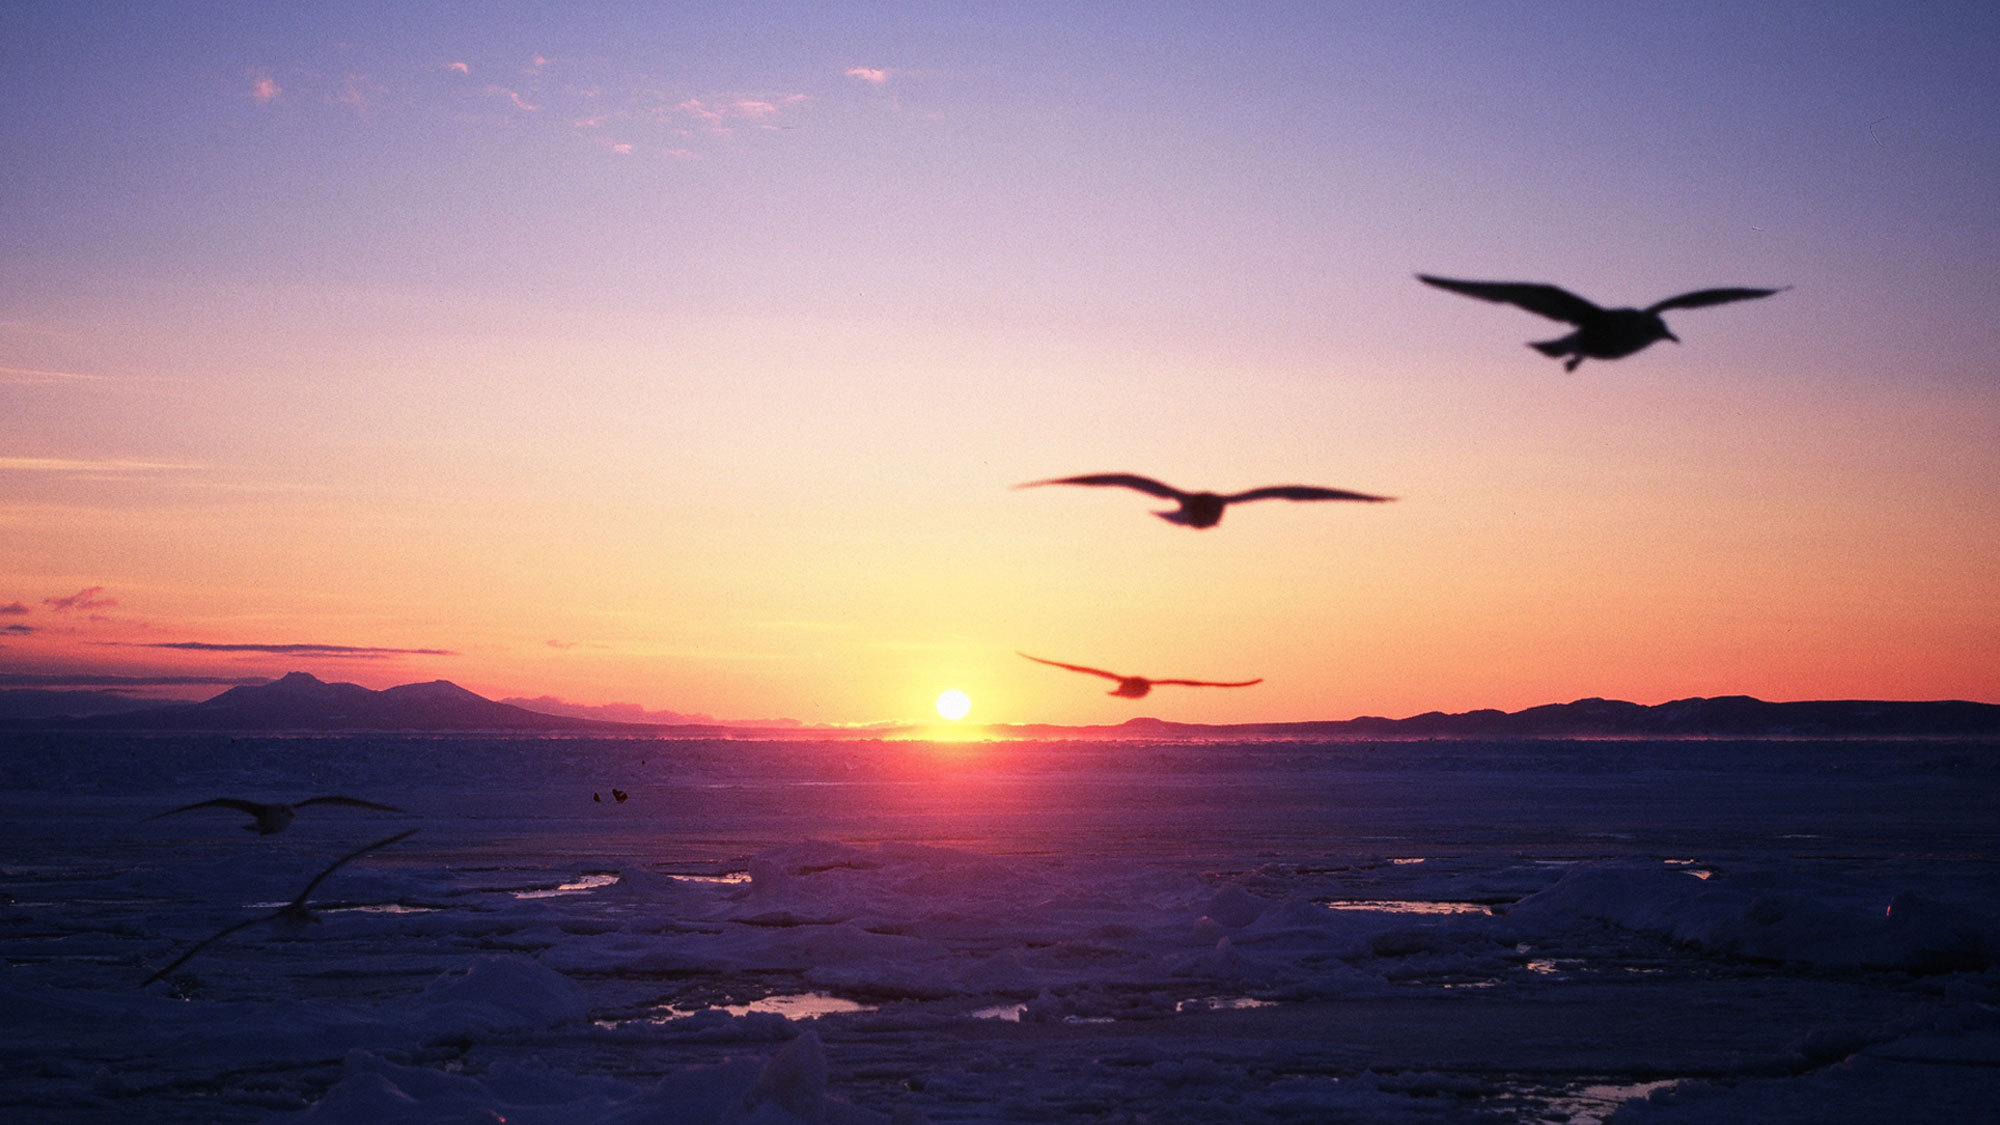 夕陽が沈むオホーツク海の流氷